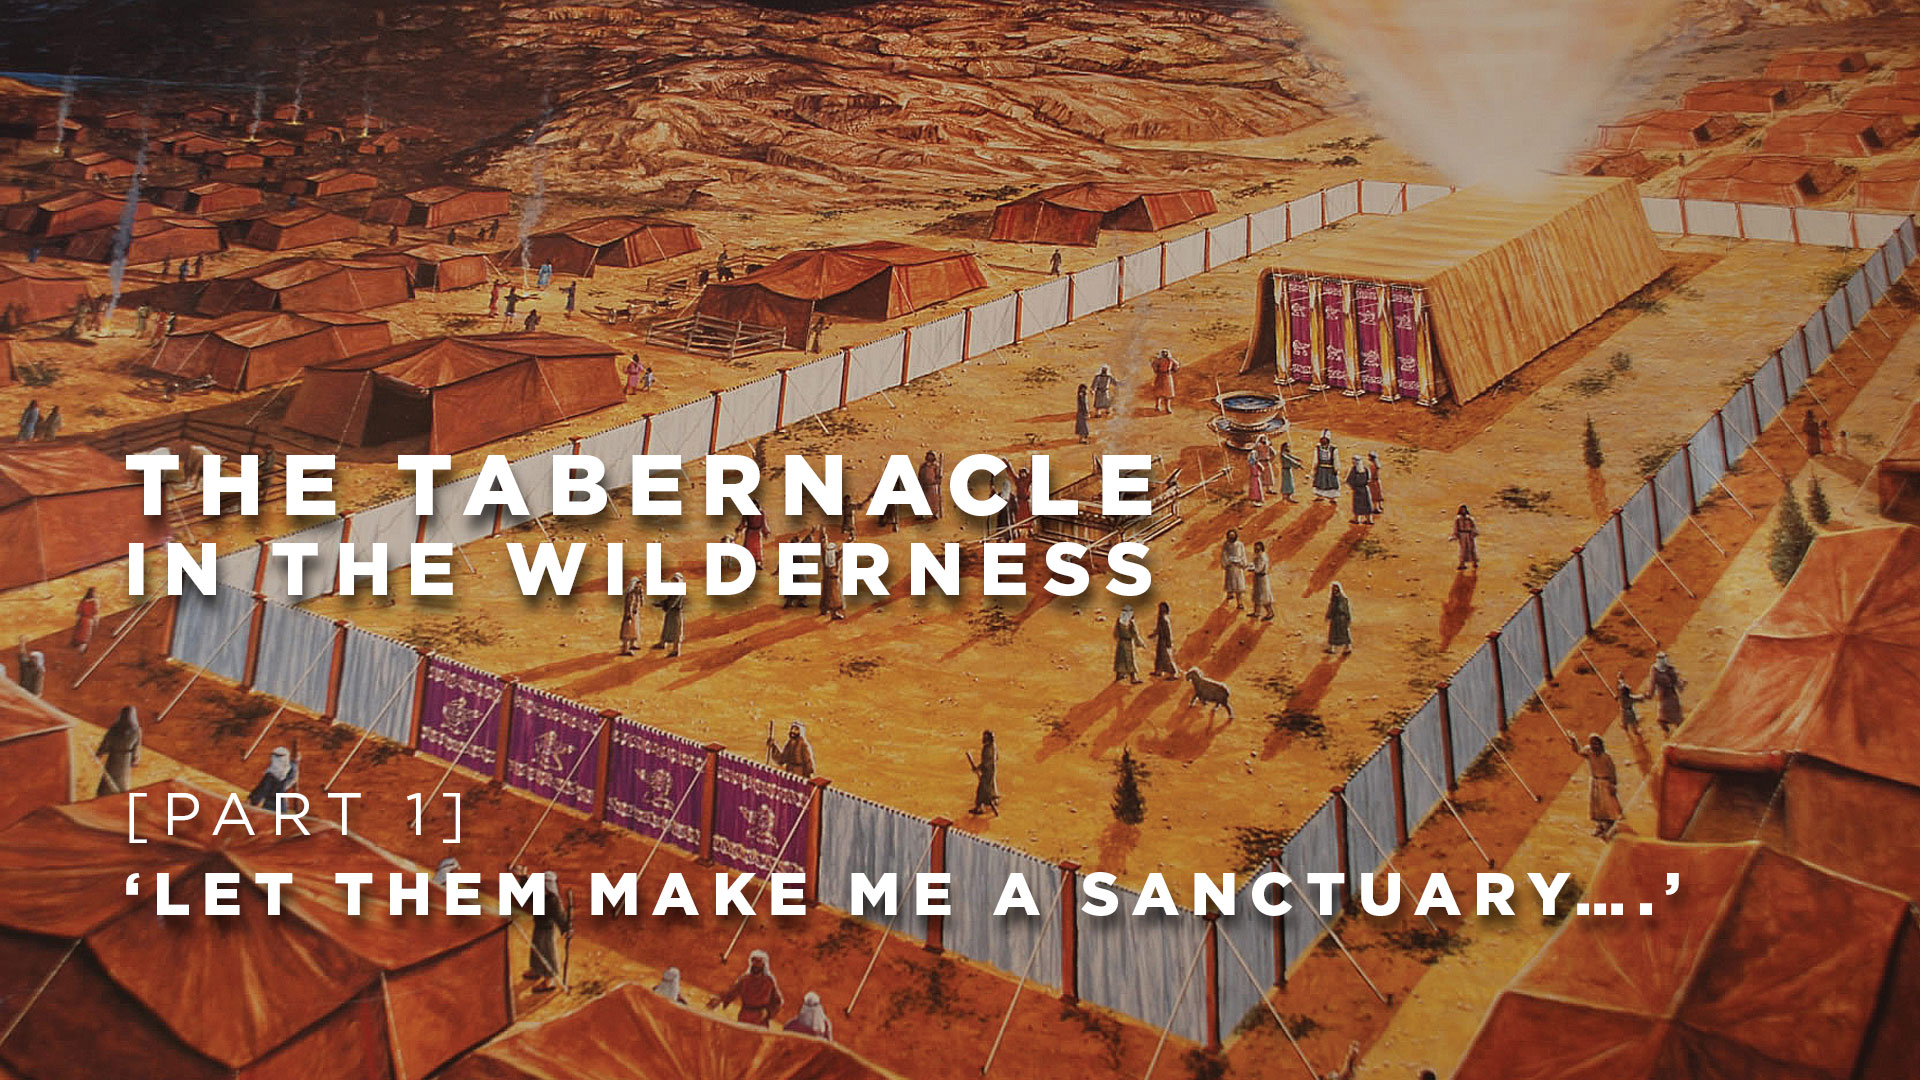 Part 1: Let them make me a sanctuary